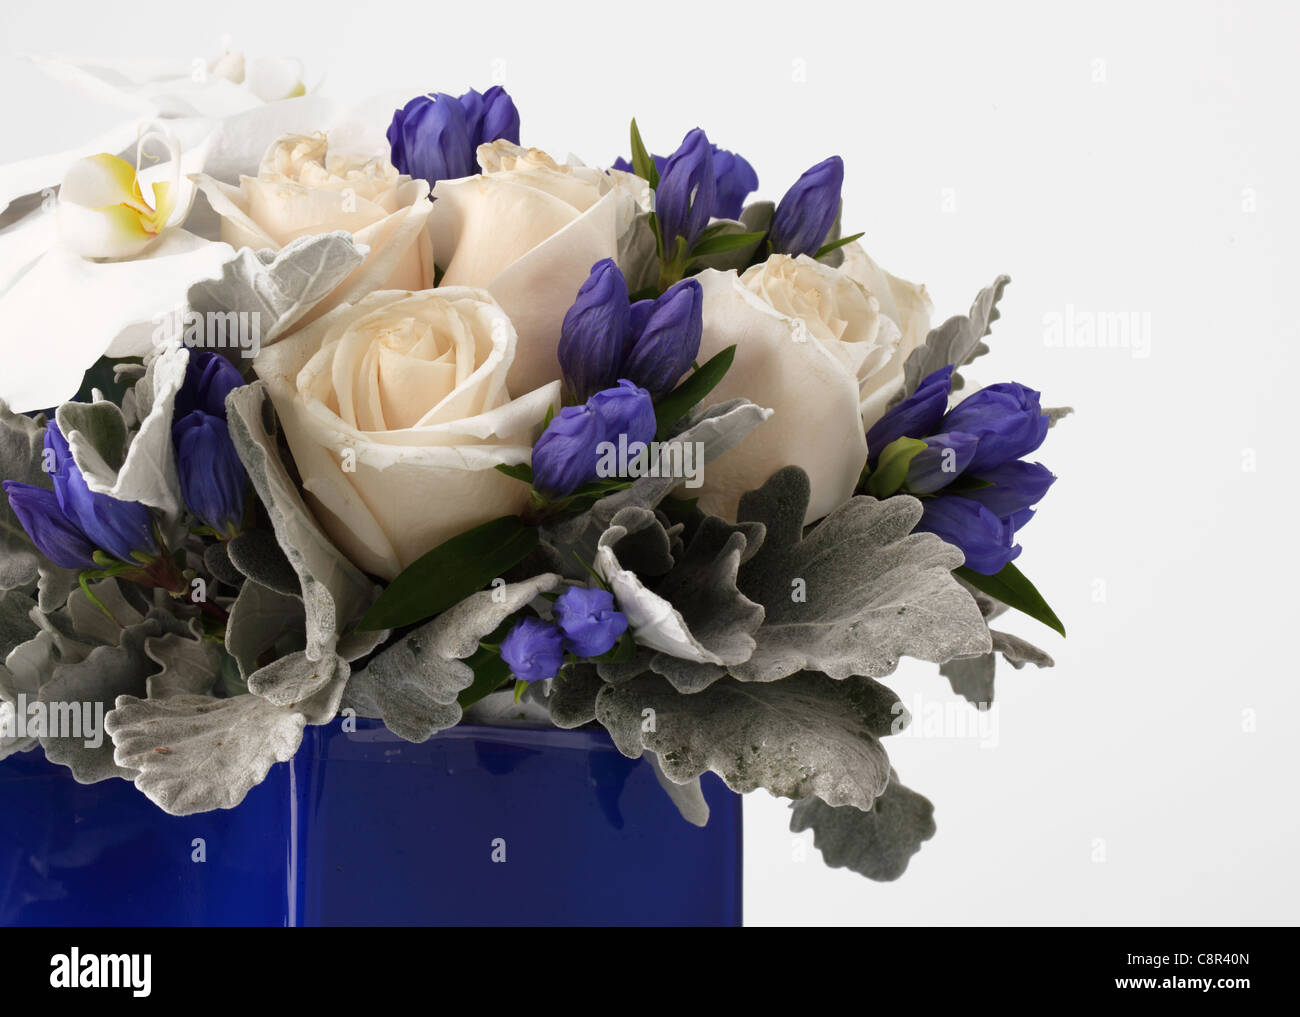 Un close-up di un colorato bouquet di fiori in un vaso. La crema di rose, 1 ortensie blu, bianco phalaenopsis, sconosciuto di gemme di colore viola. Foto Stock